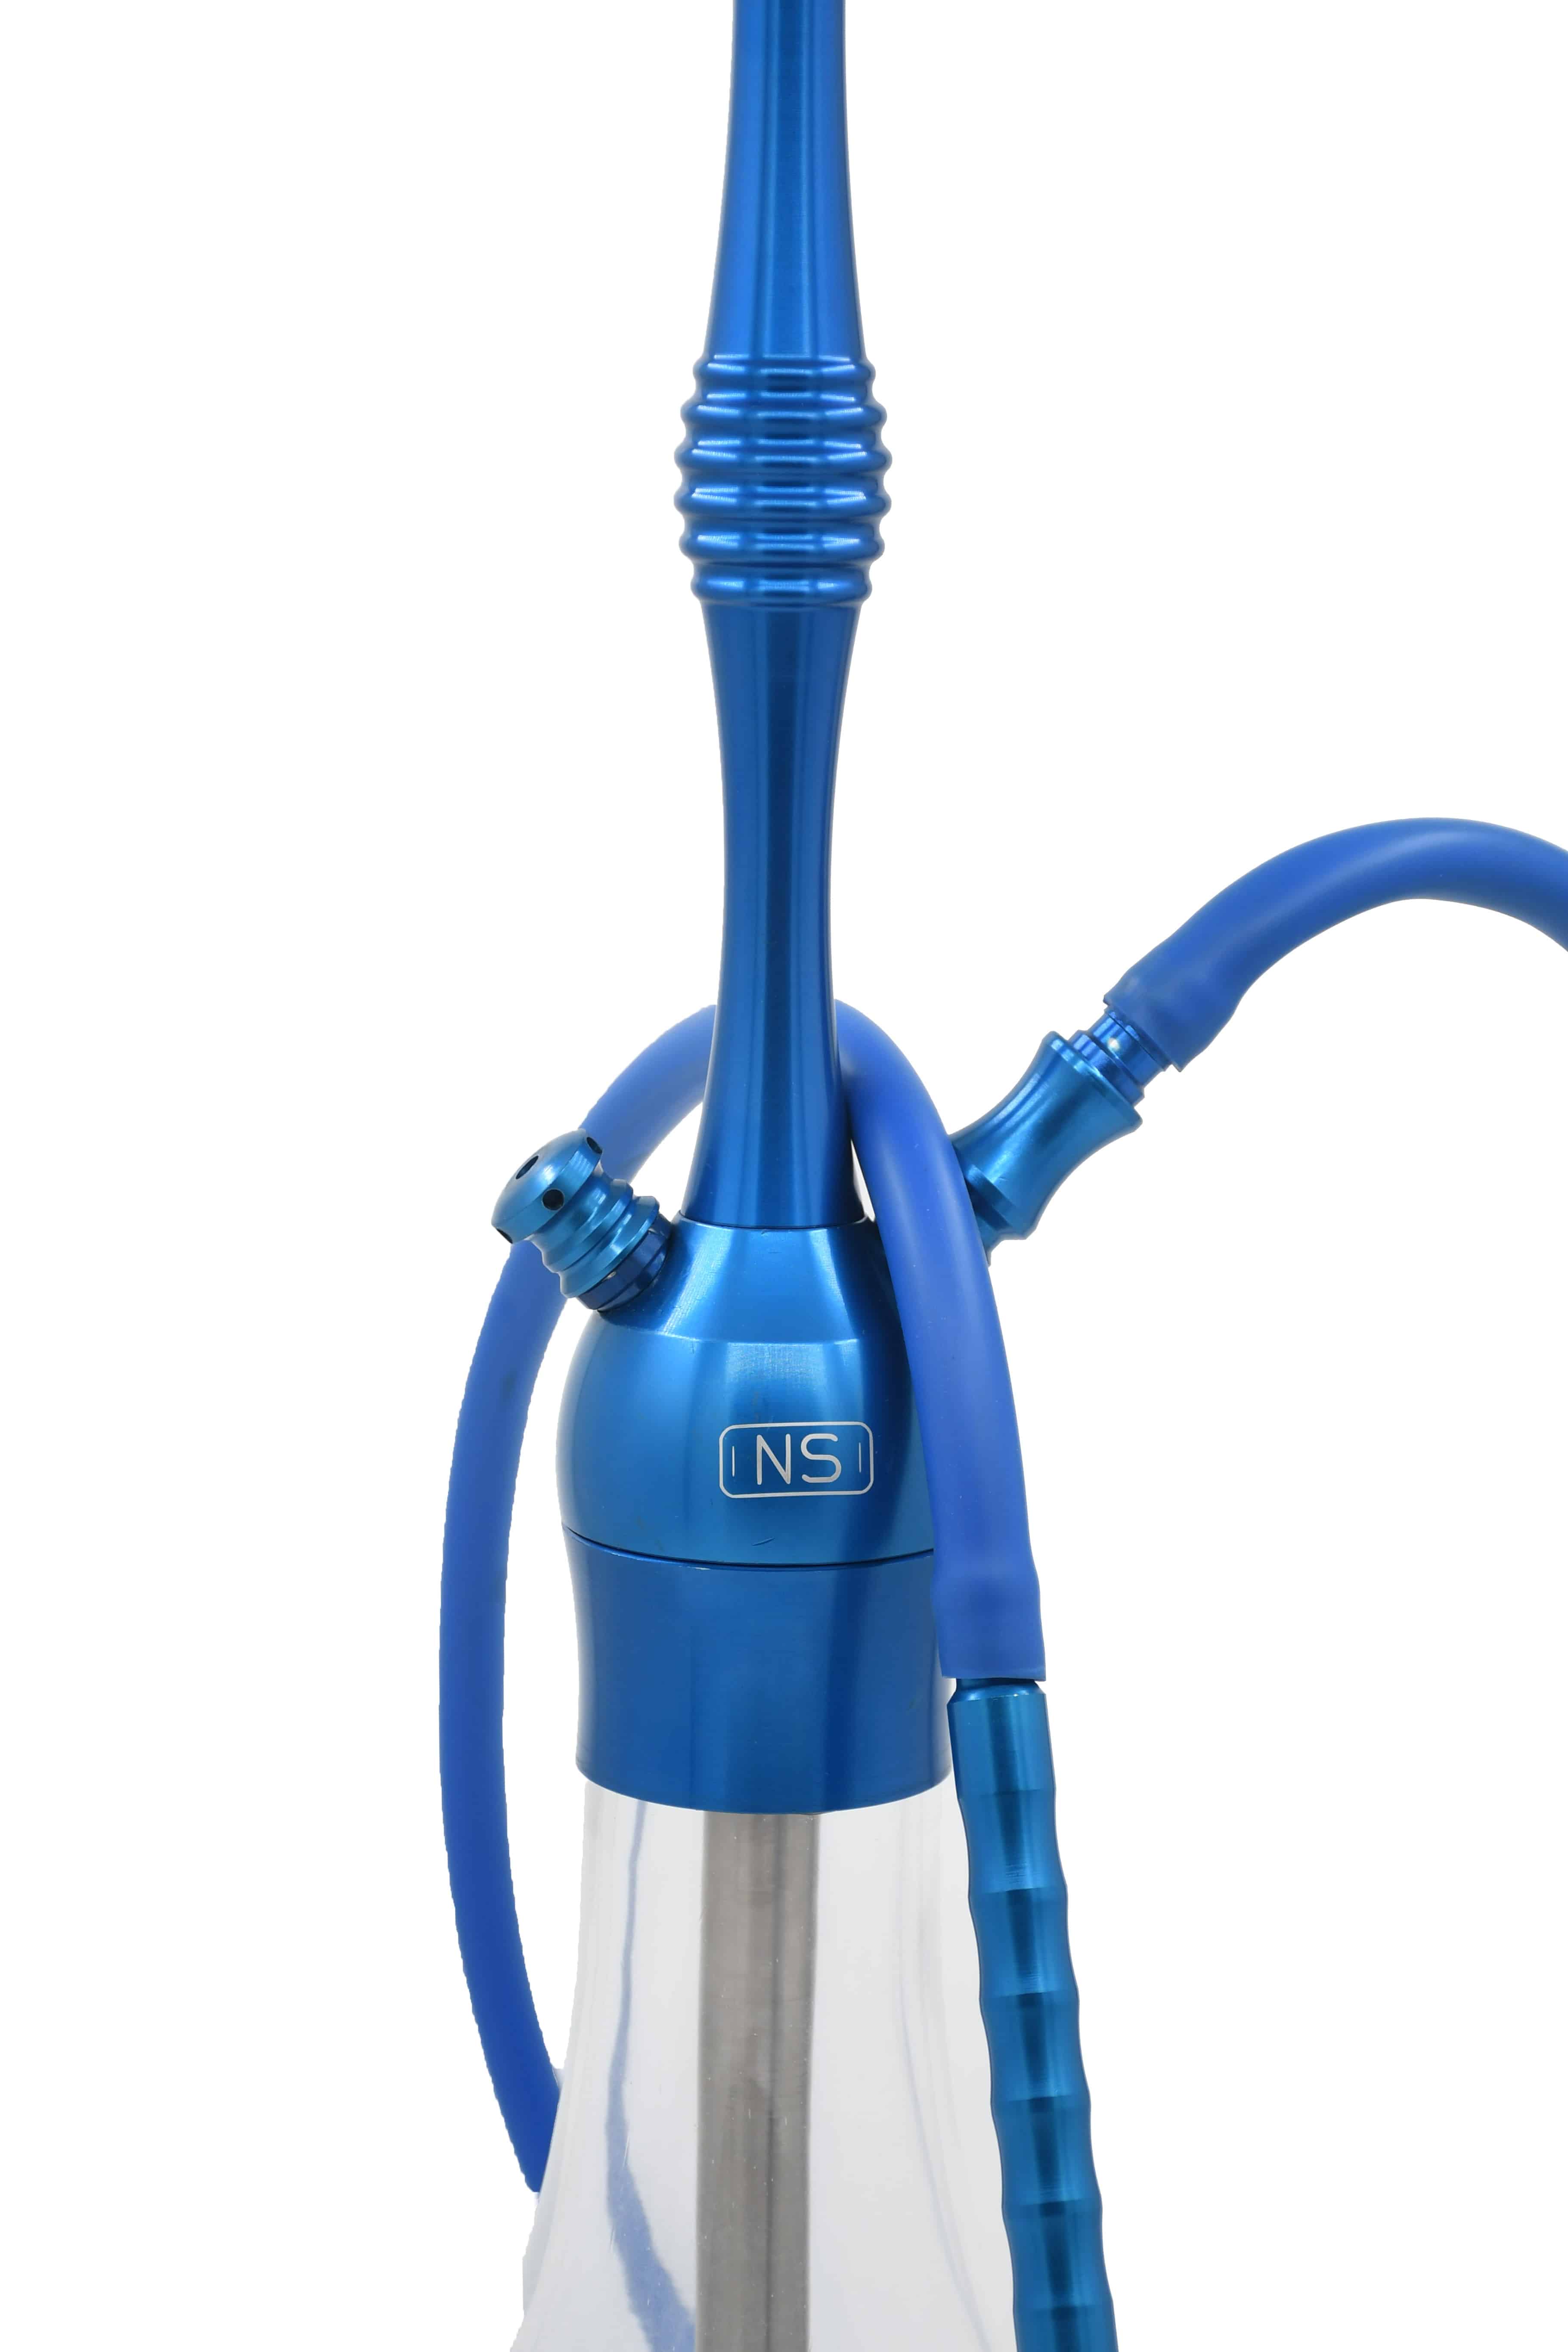 NS Mod02 Prestij Serisi Alüminyum Nargile Takımı Full Set – Mavi